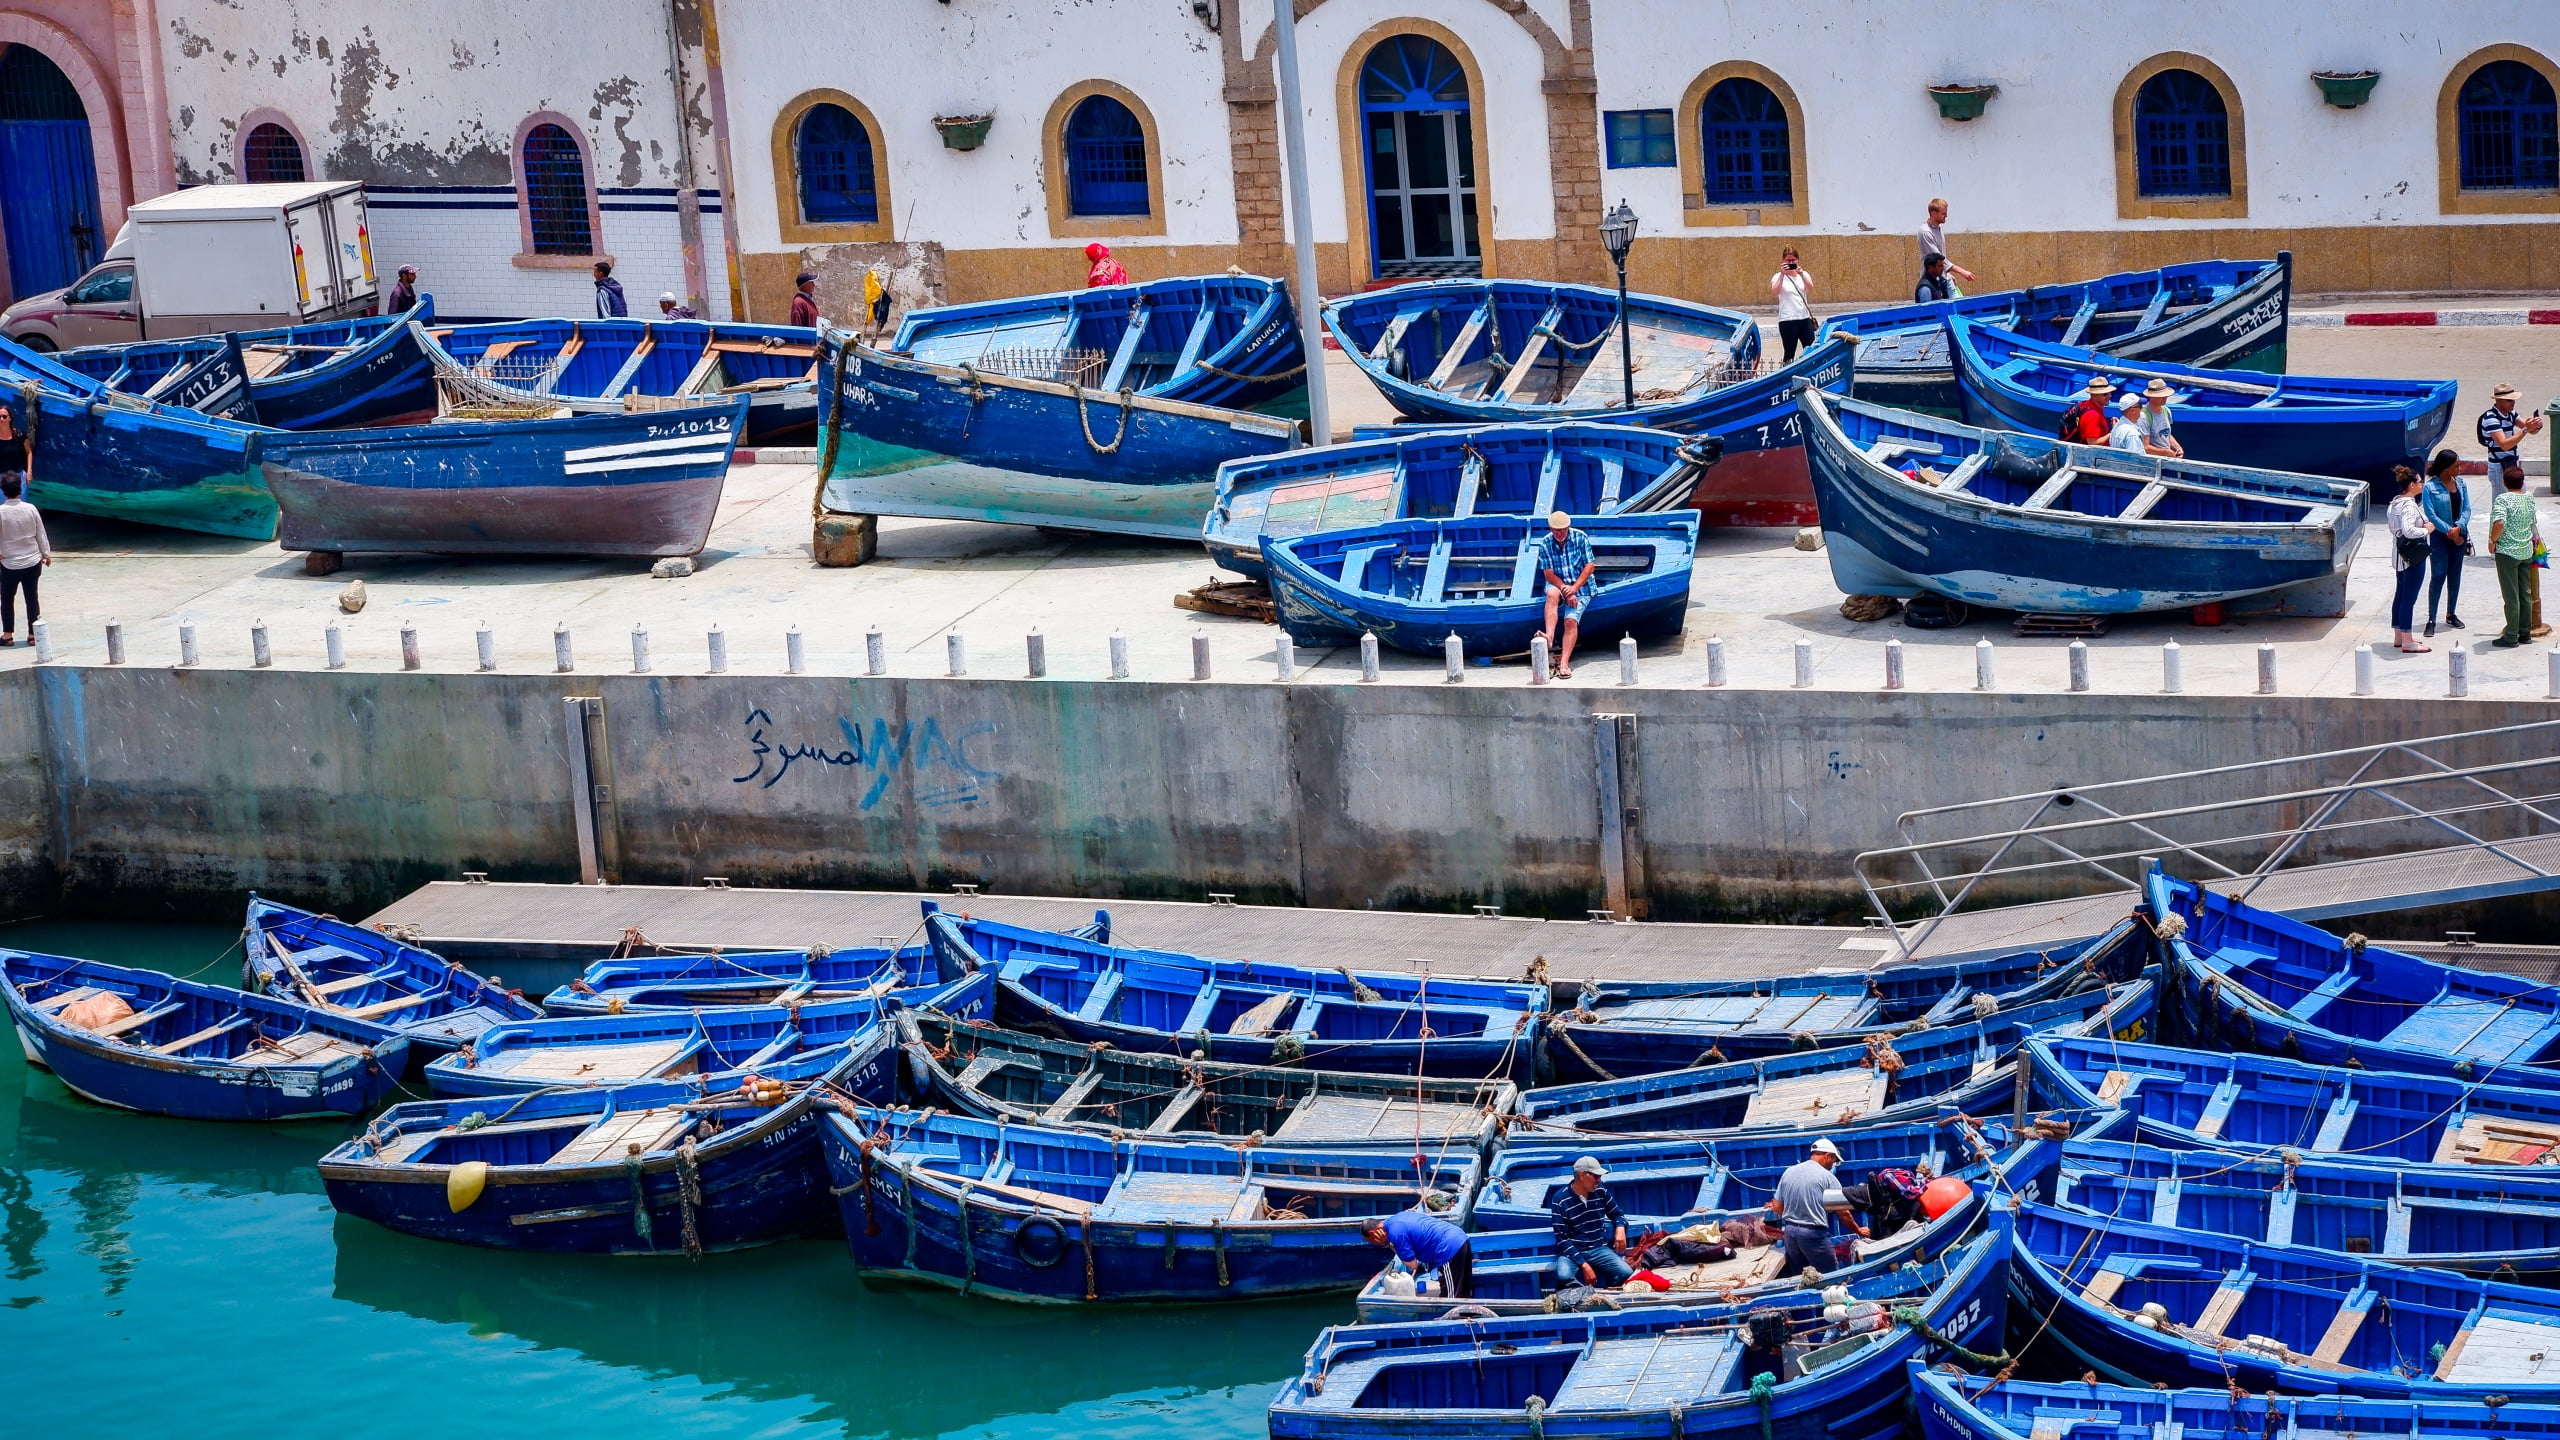 Du visar för närvarande Essaouira – Den blå pärlan